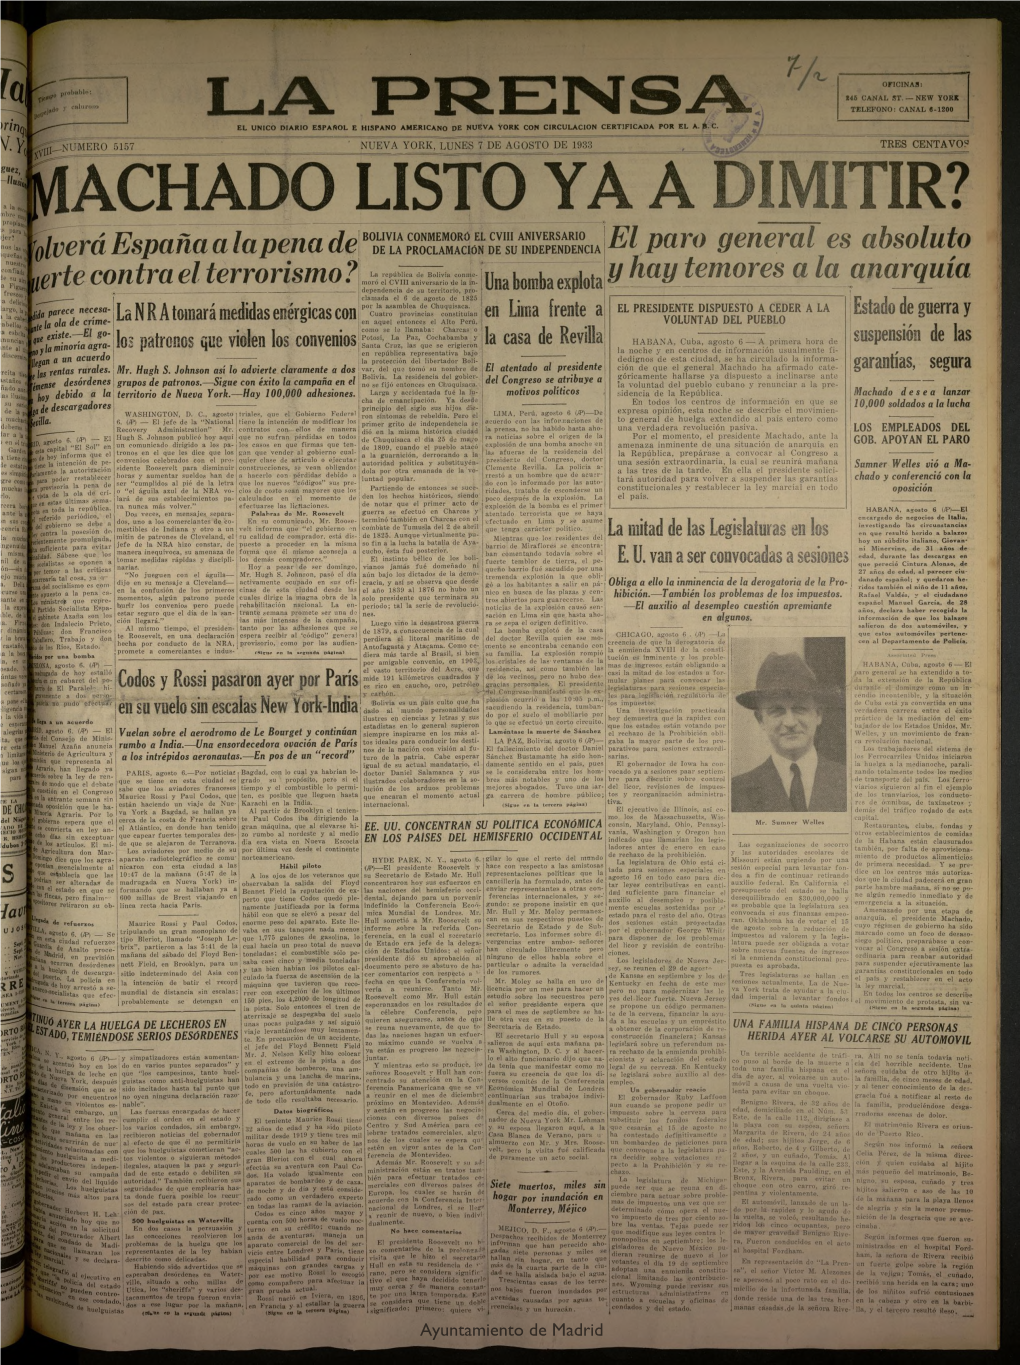 La Prensa.Único Diario Español E Hispano Americano En Nueva York, 7 De Agosto De 1933, Nº 5157